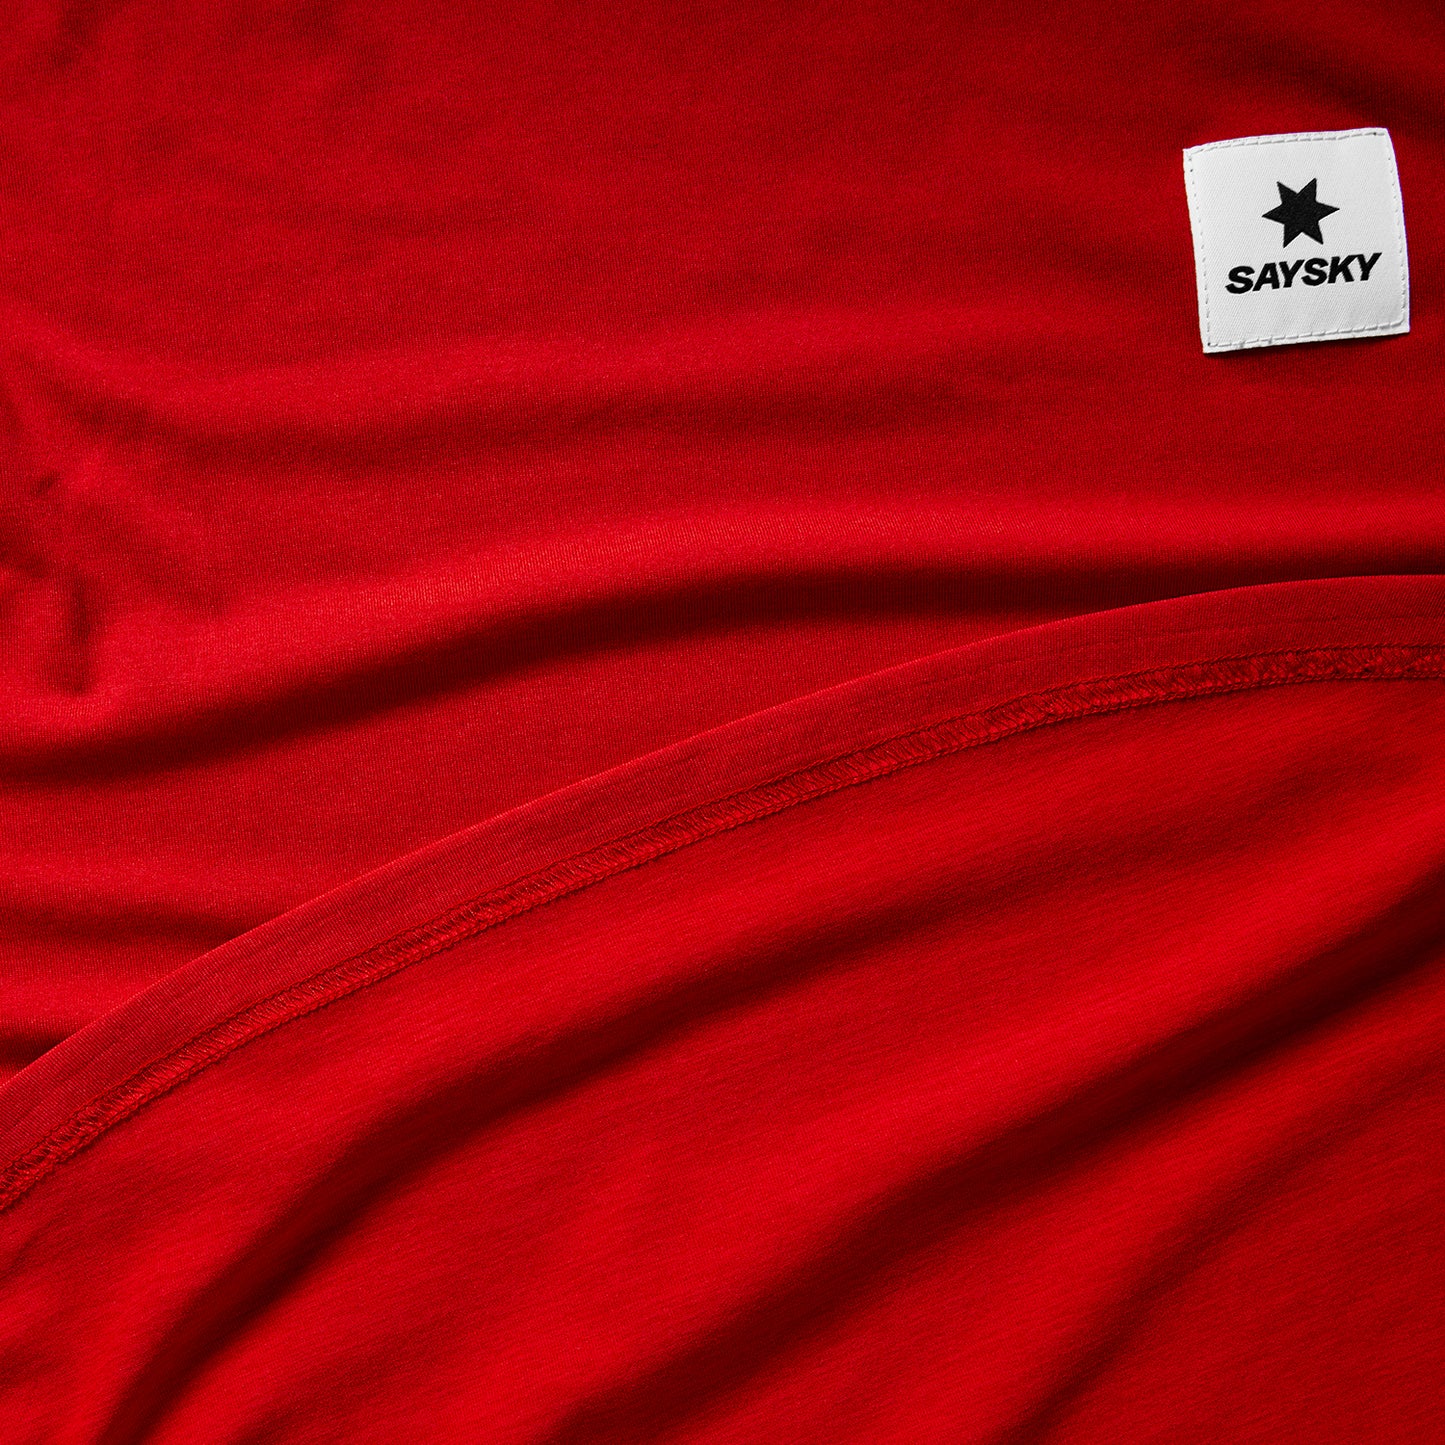 ランニングTシャツ(ロングスリーブ) LMRLS01c5004 Clean Pace Long Sleeve - Red [メンズ]